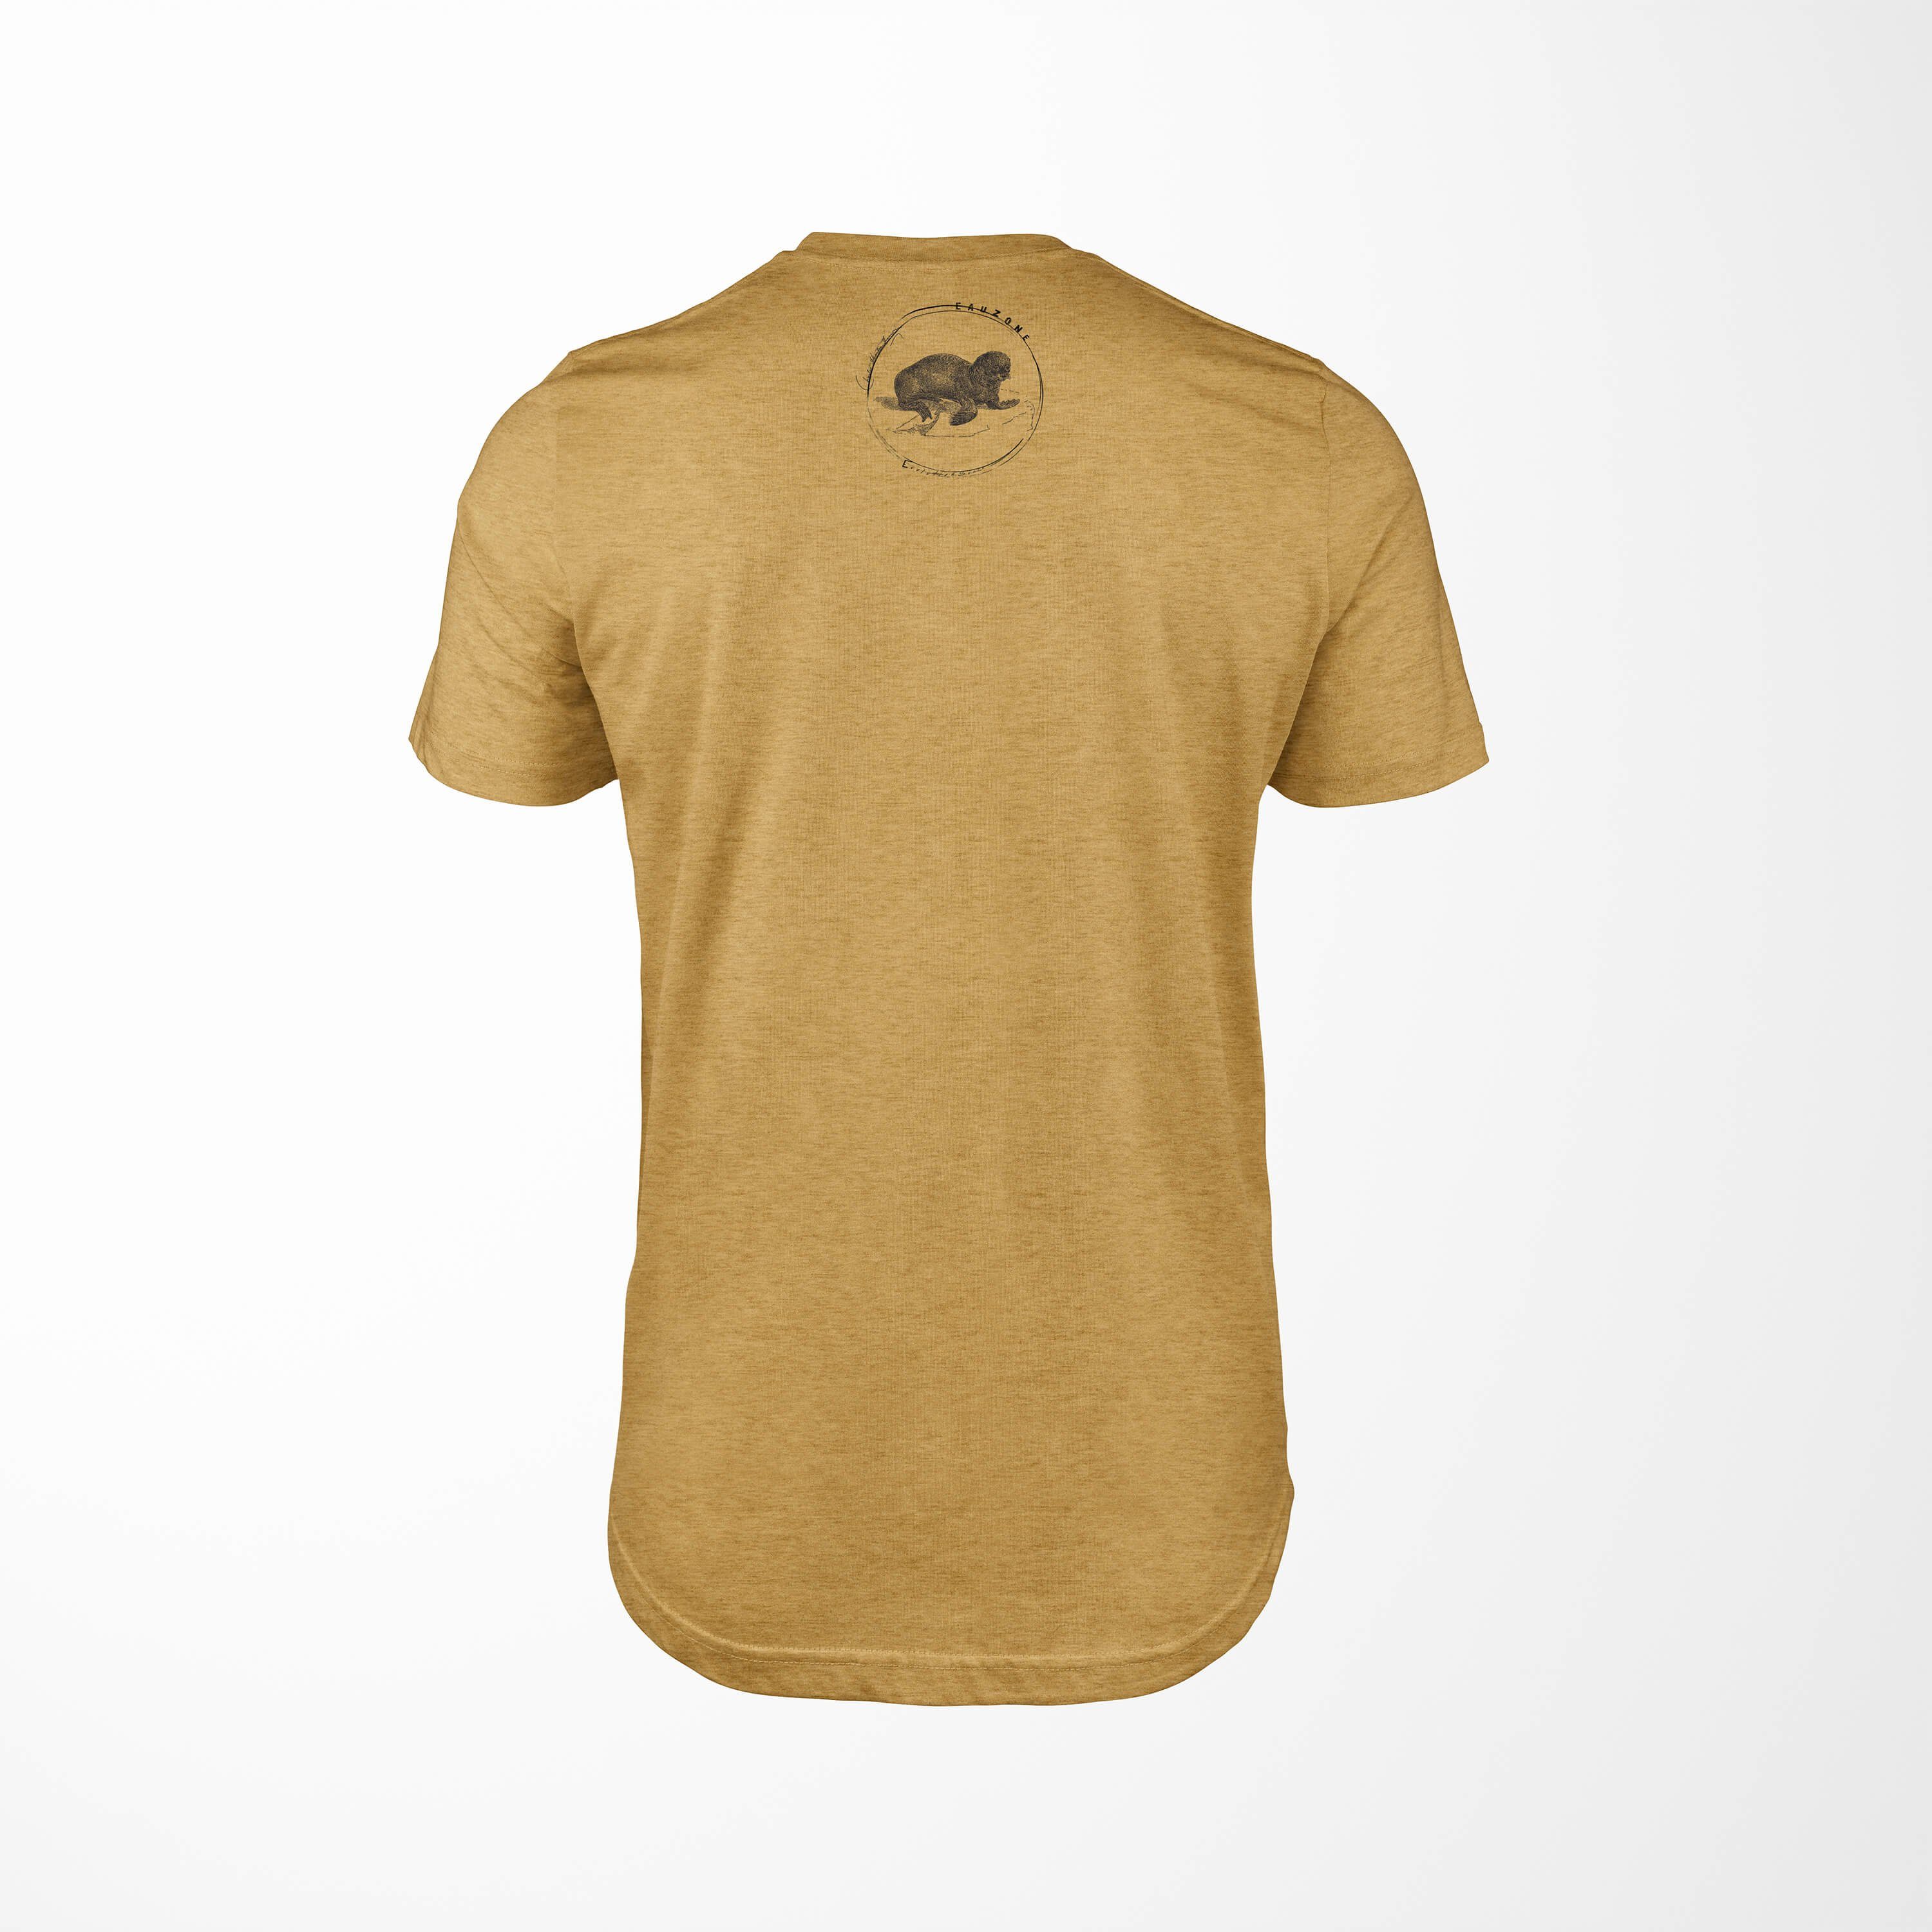 T-Shirt Antique Herren Gold Evolution T-Shirt Seelöwe Sinus Art